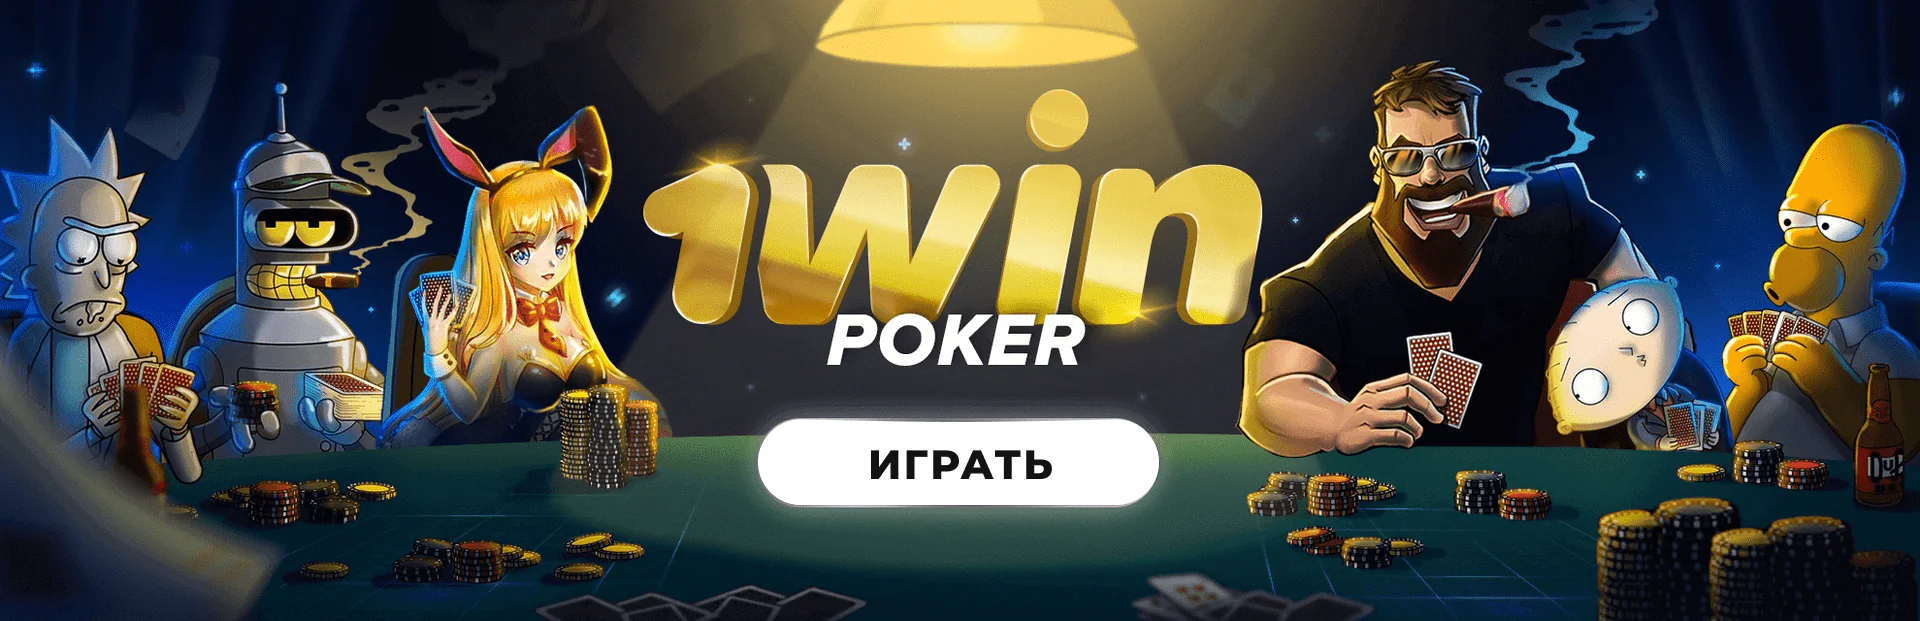 Felt slots casino 1win 🍀 Как выиграть джекпот в играх провайдера